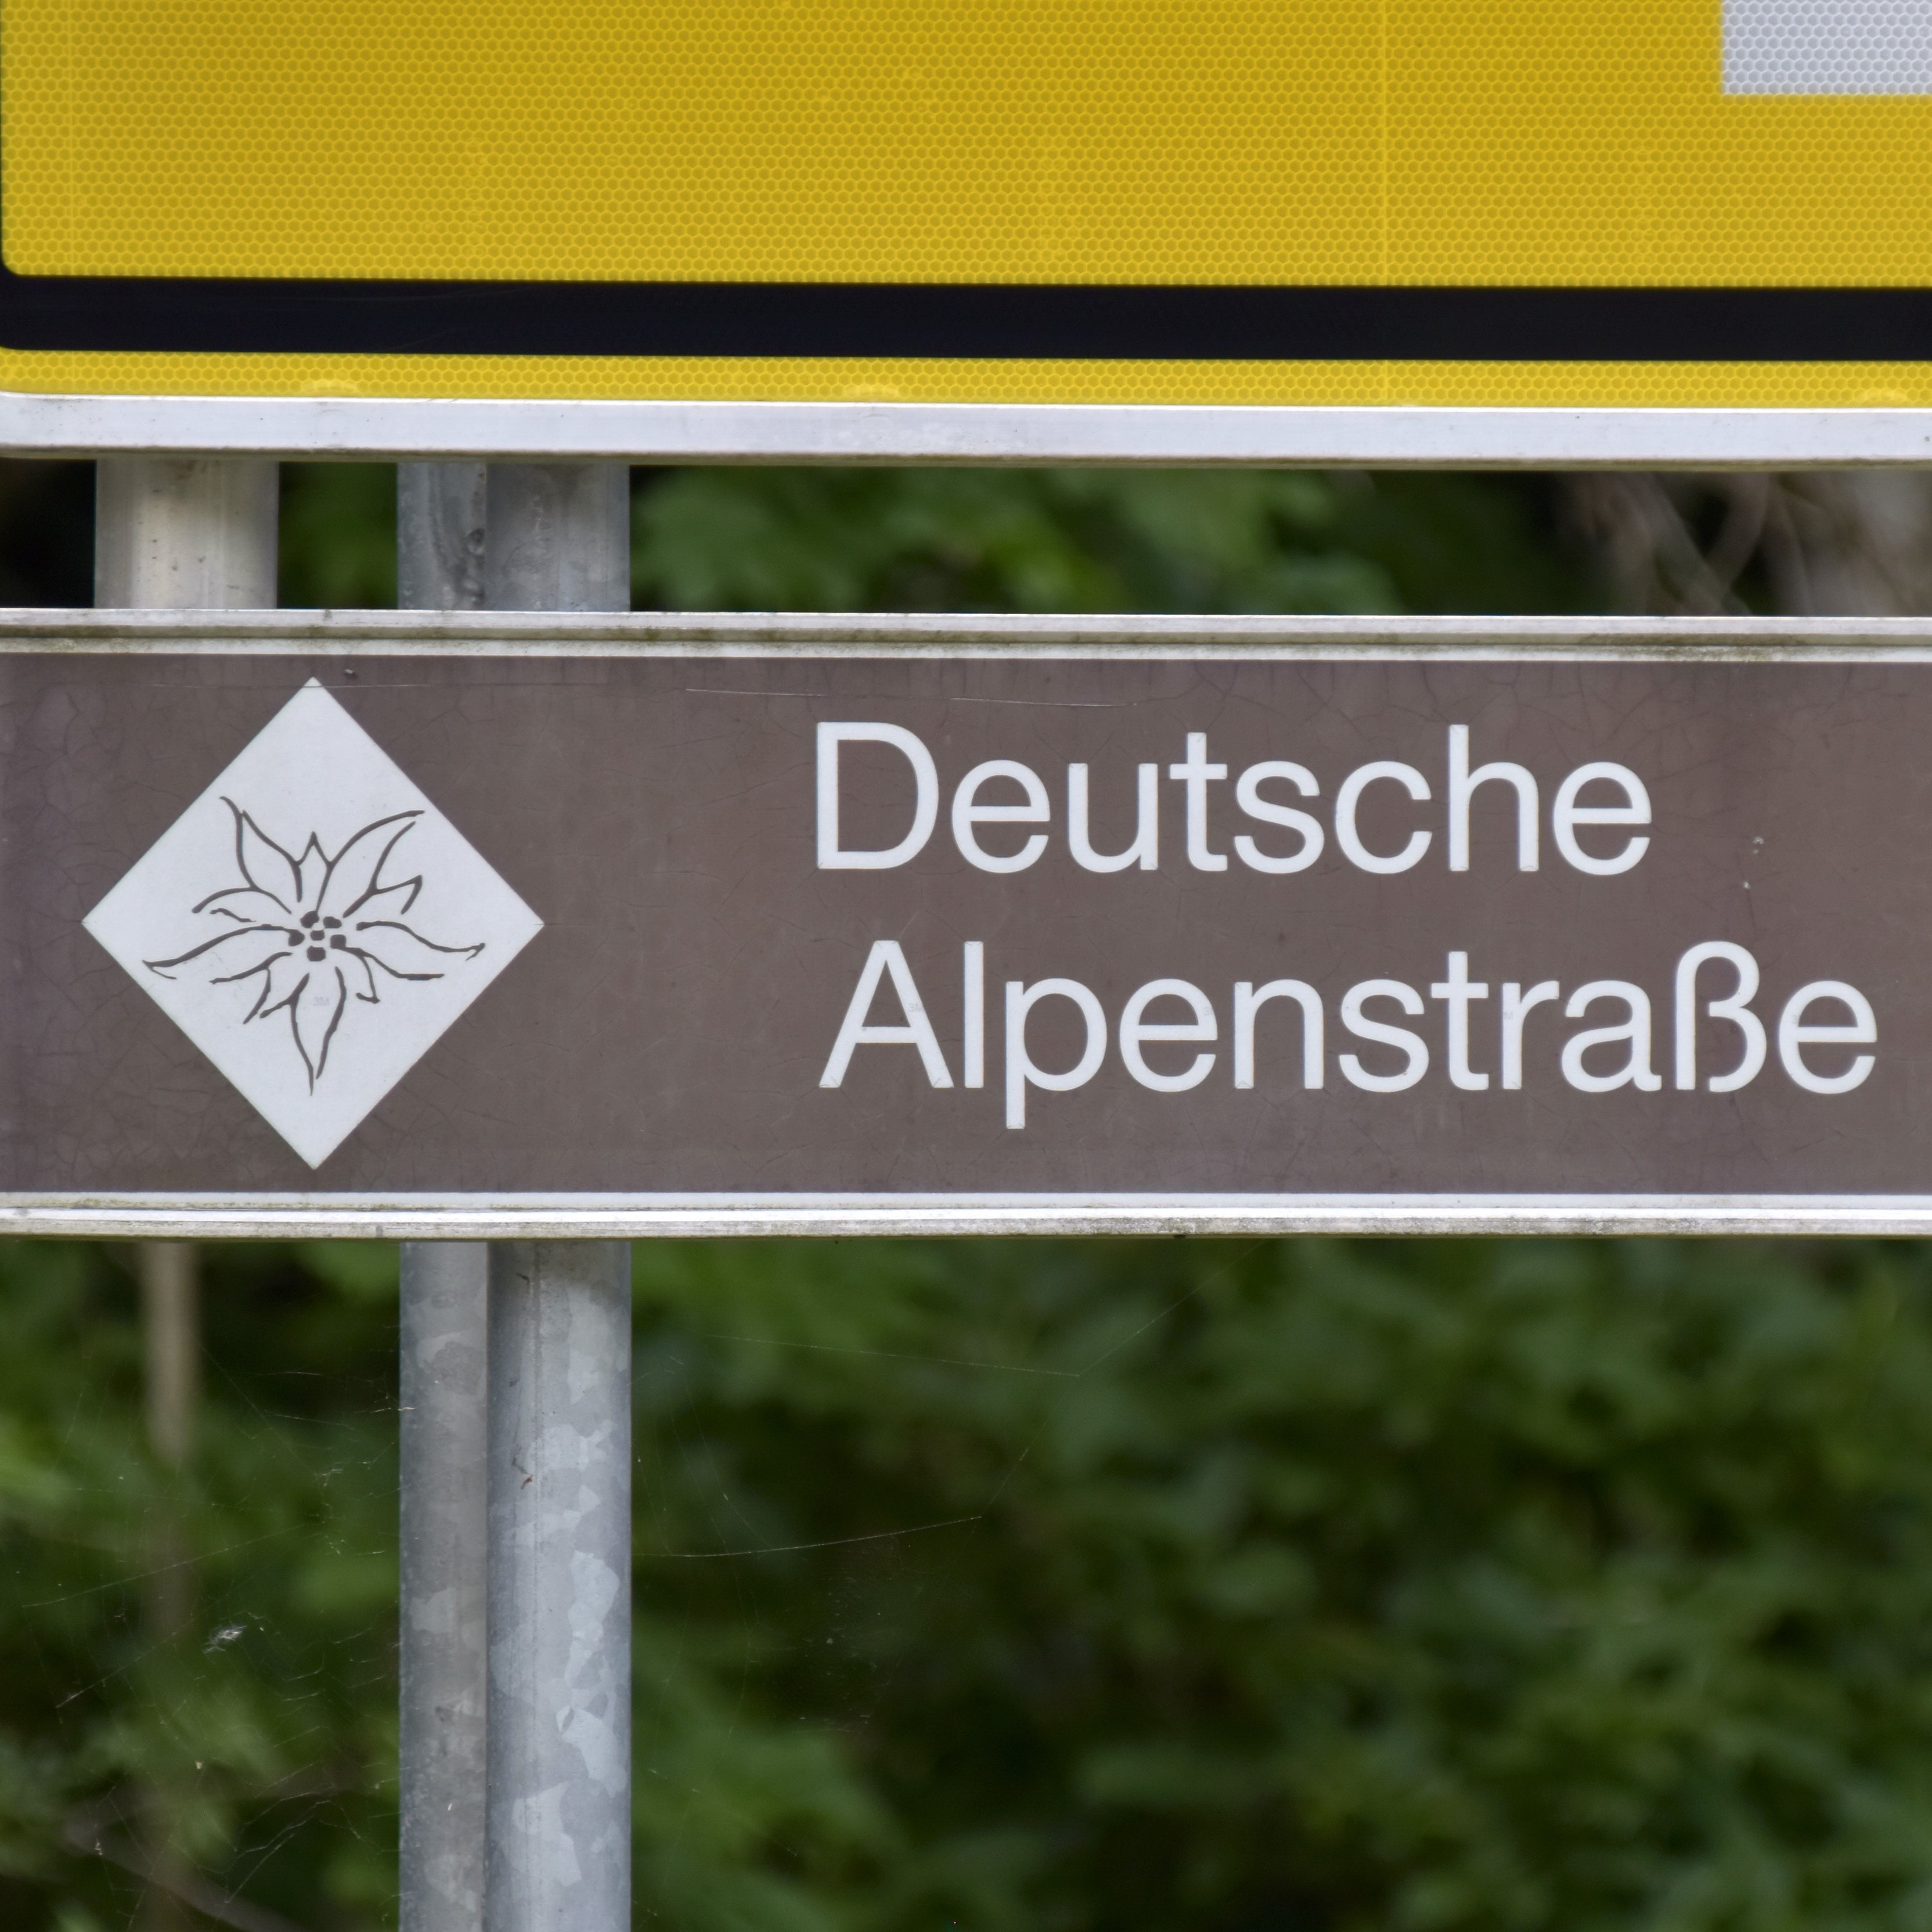 GPX-Track + Handbuch Motorradreise Deutsche Alpenstraße